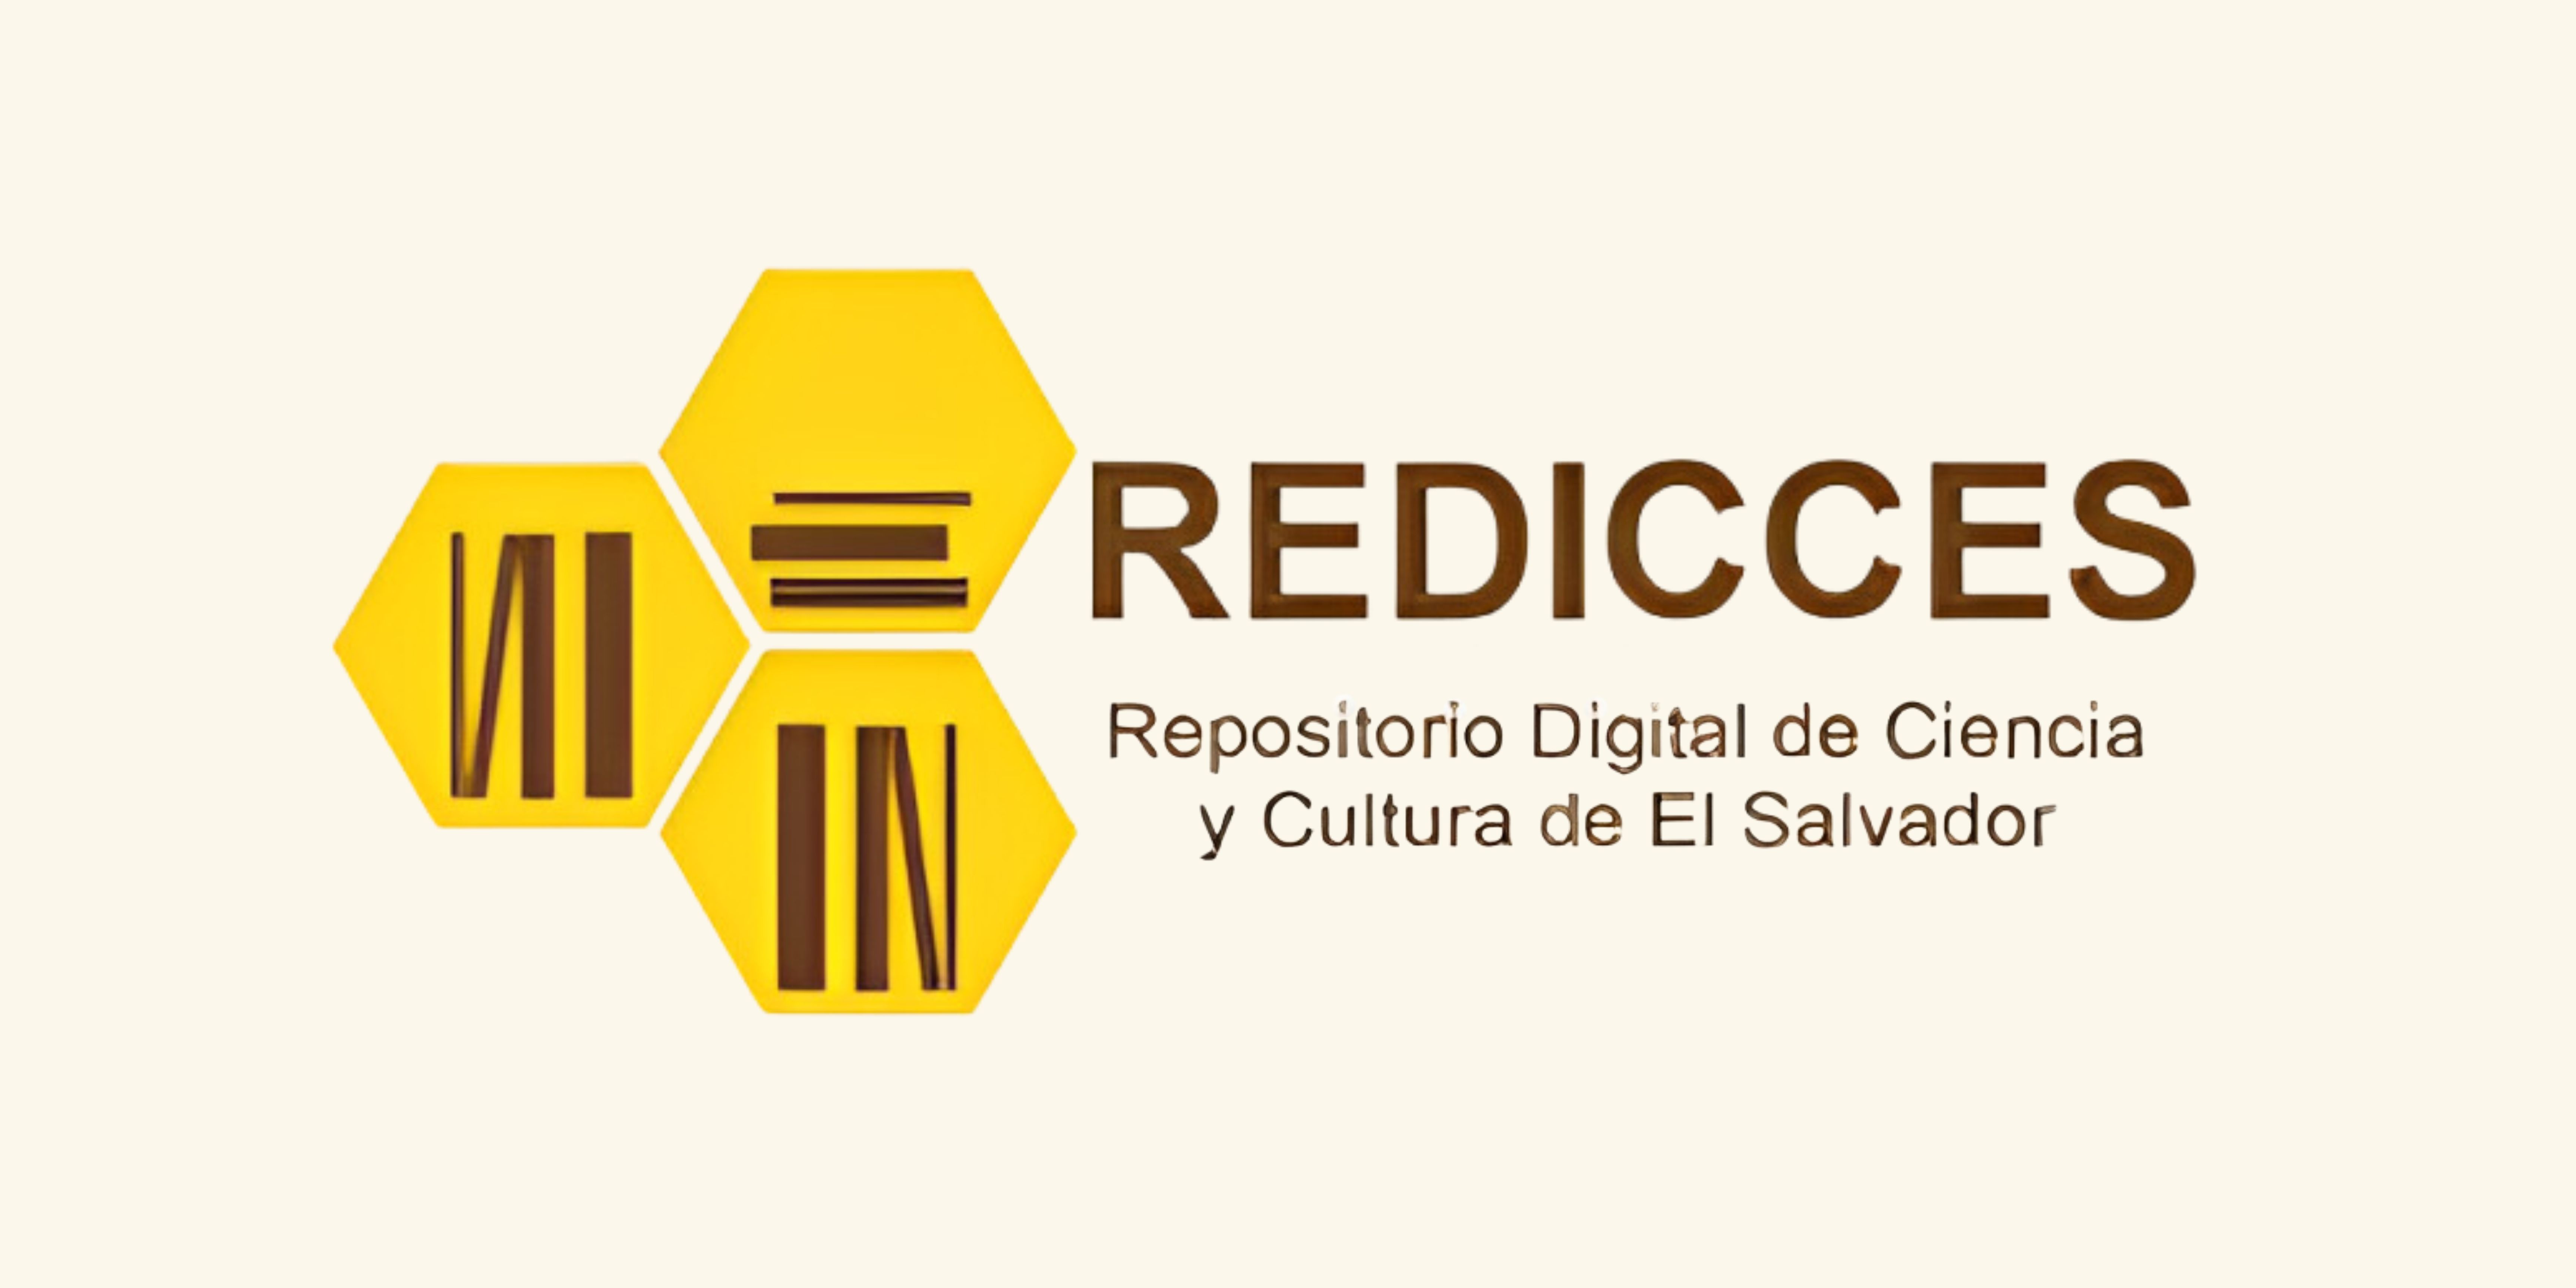 Repositorio Digital de Ciencia y Cultura de El Salvador